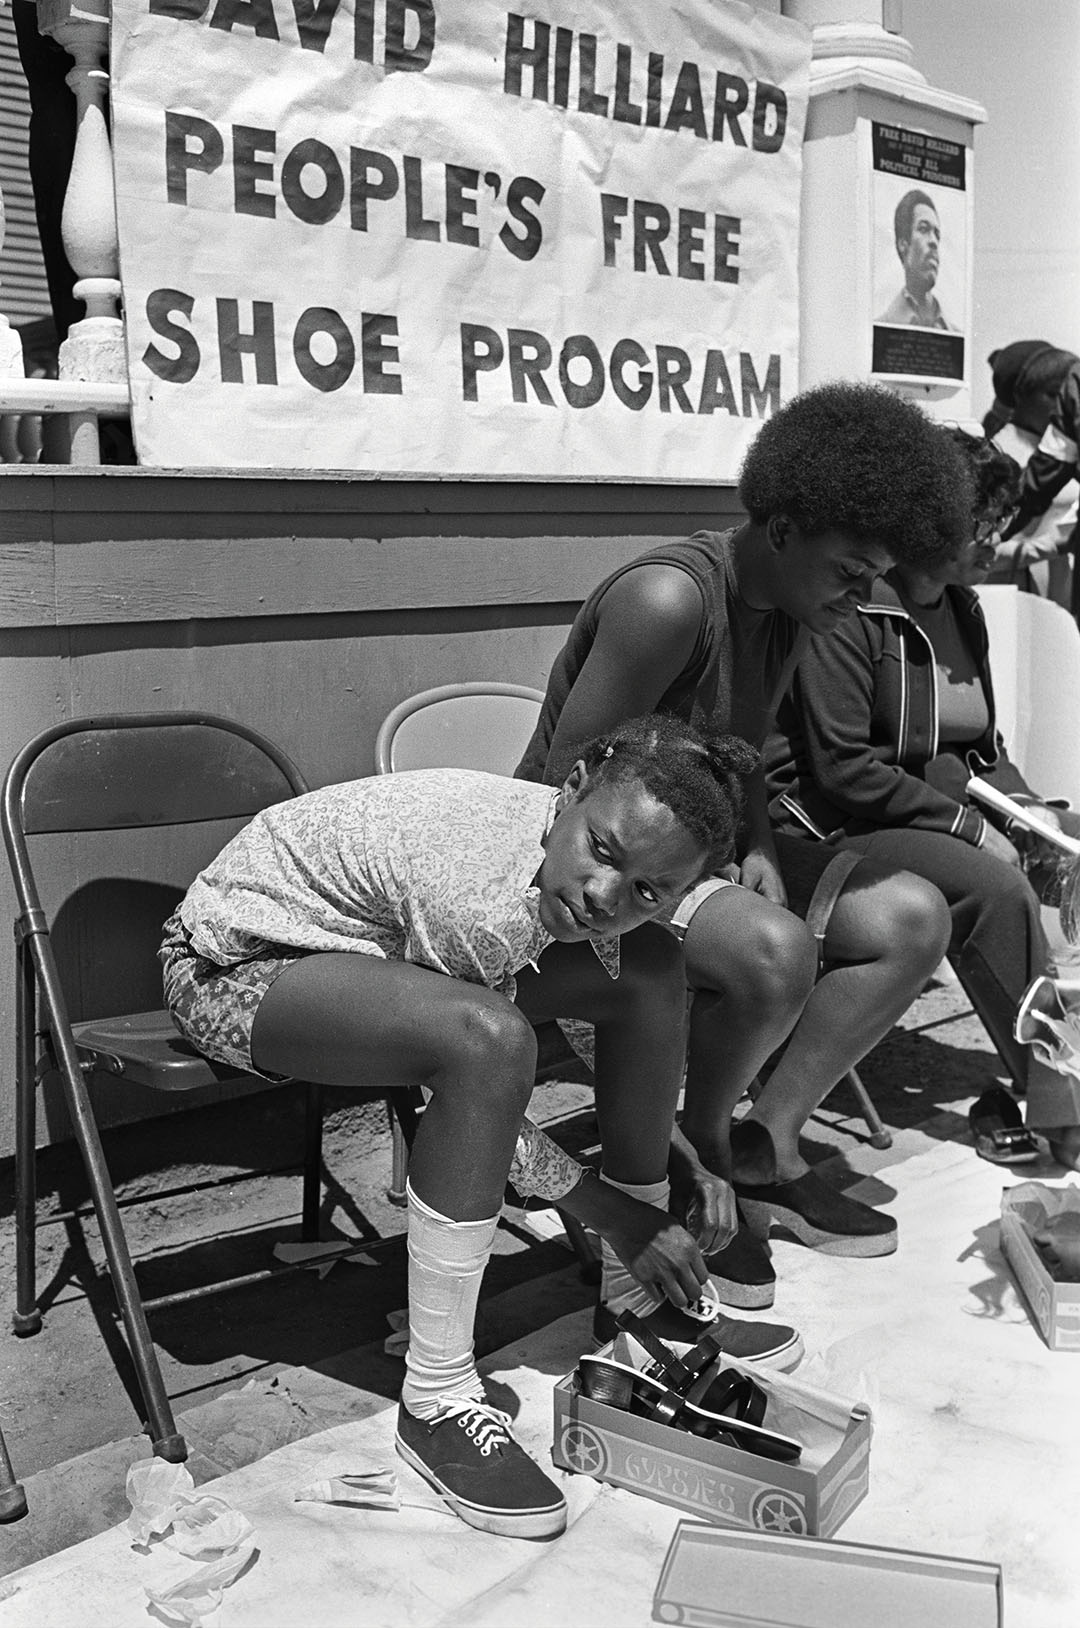 Free Shoe Program. Black Panther Party’s Black Community Survival Conference in DeFremery Park, Oakland ,1972. © Stephen Shames